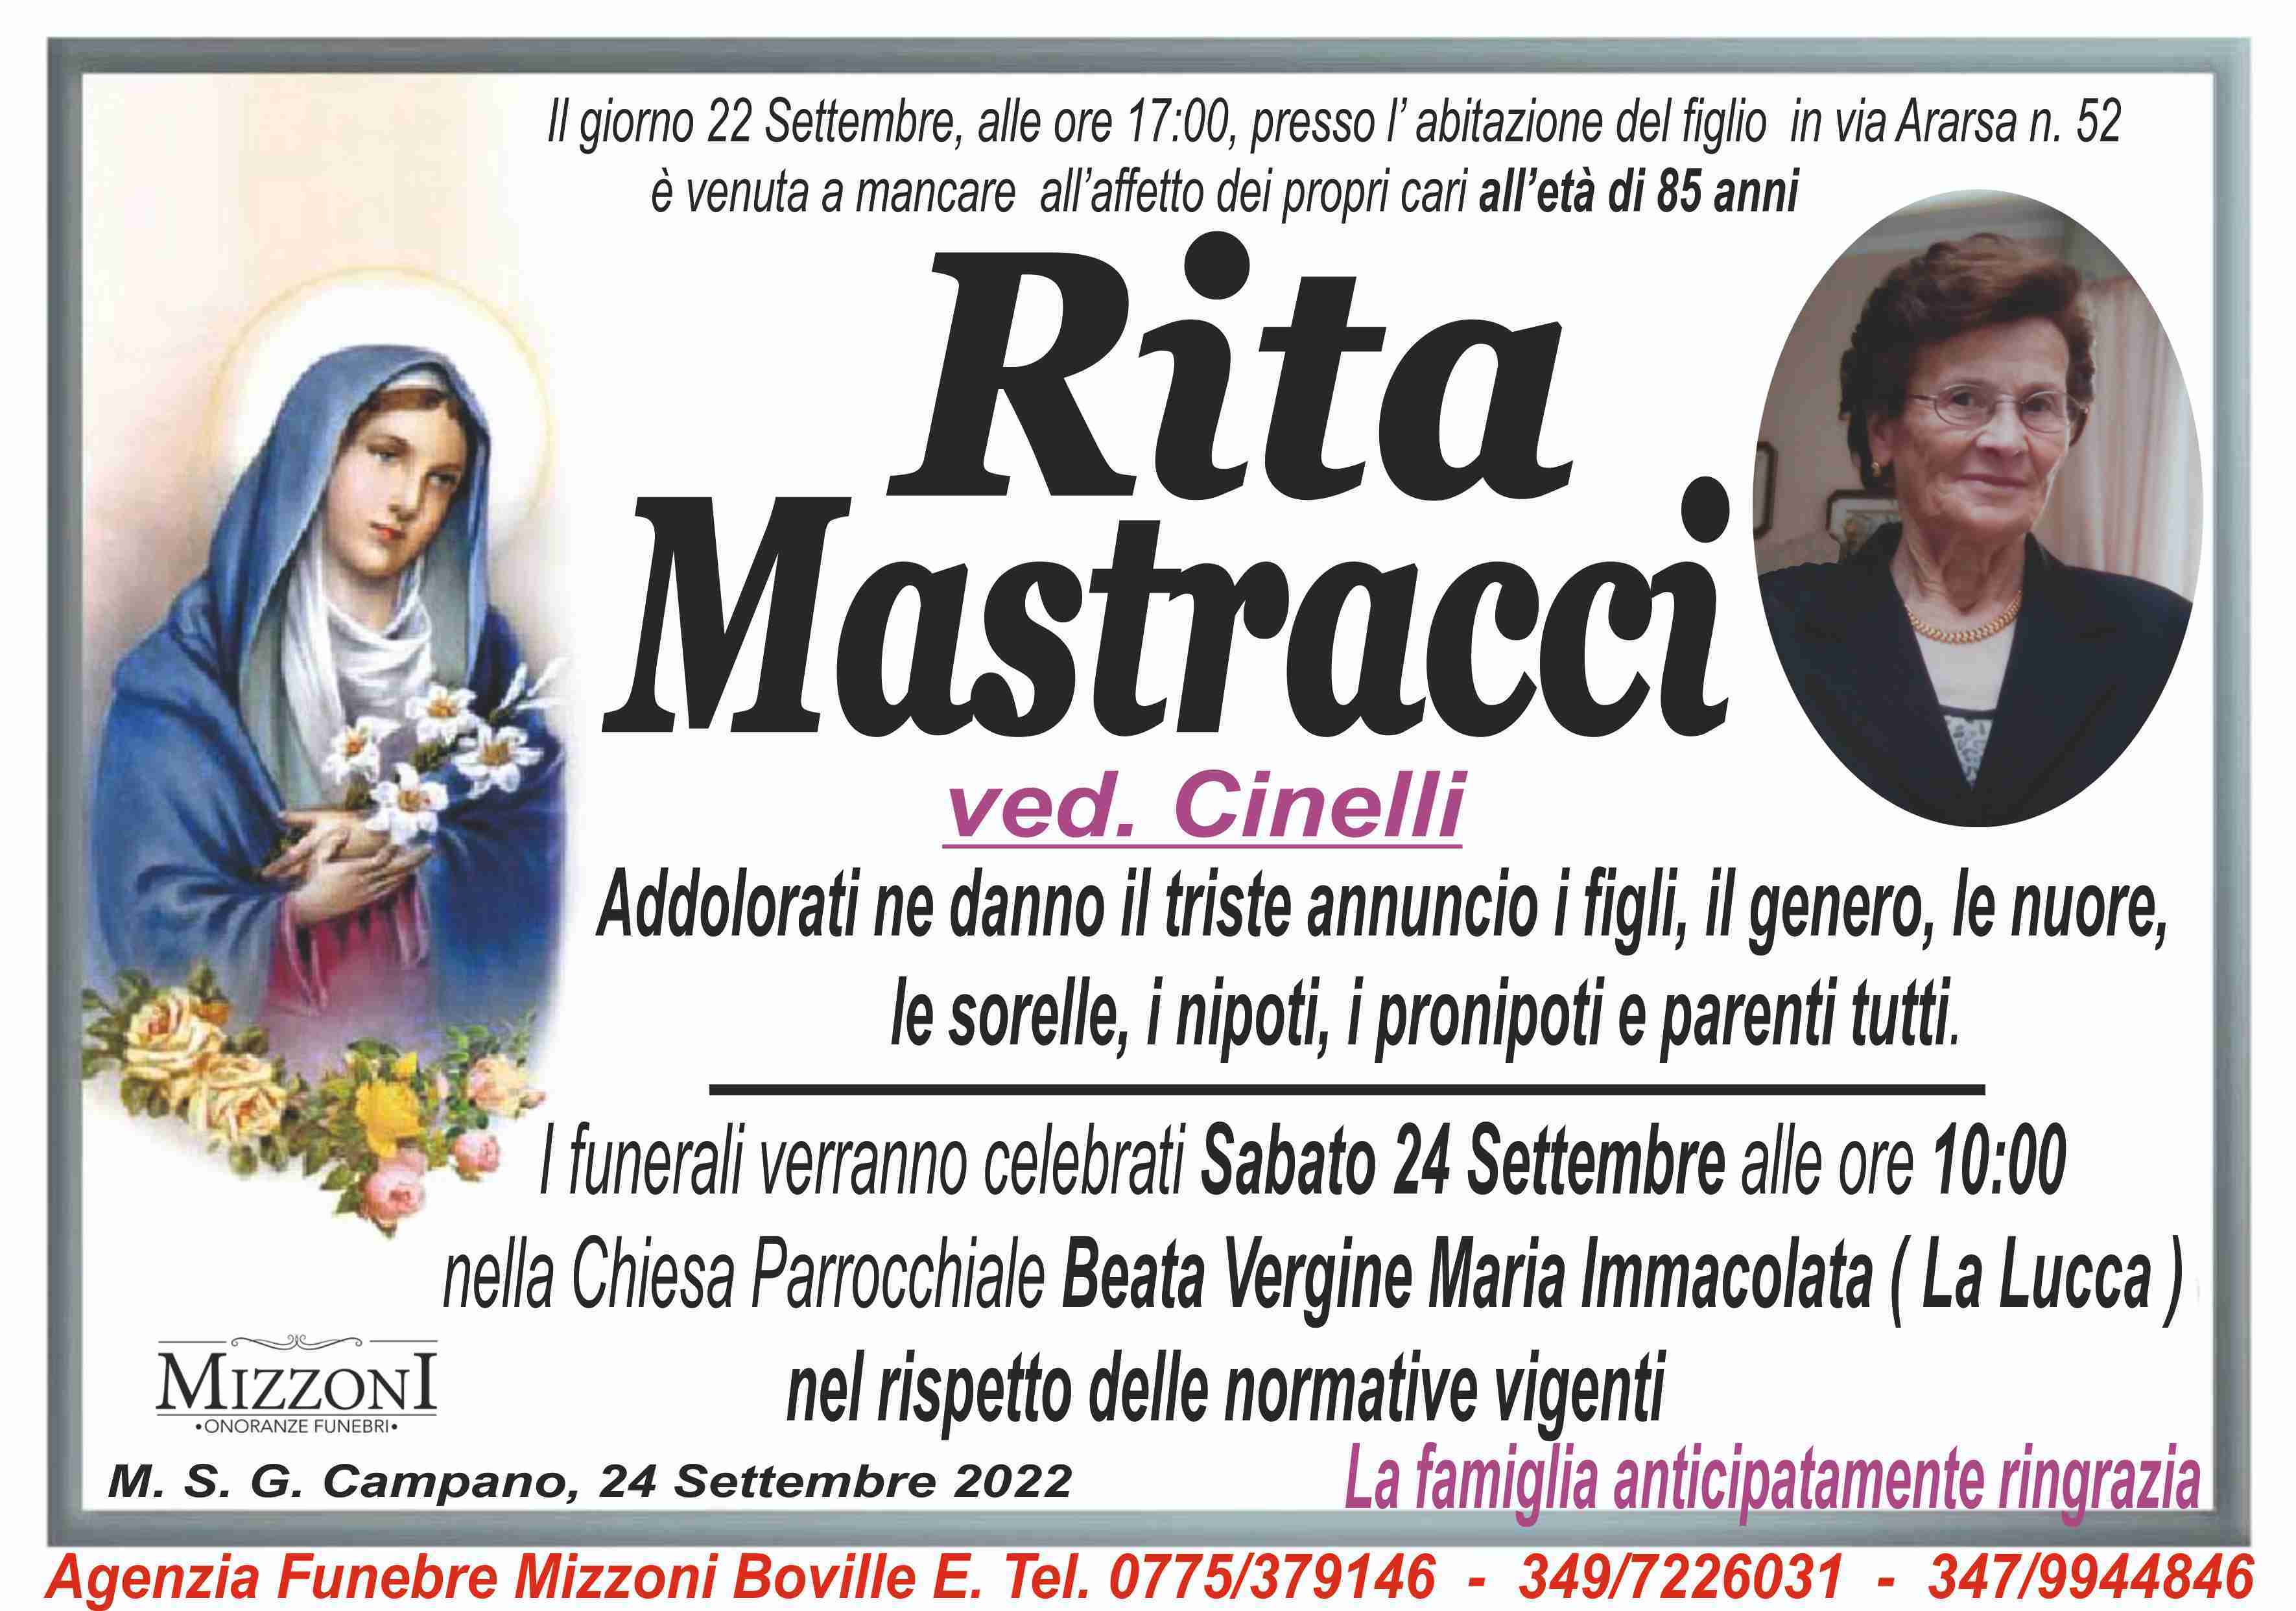 Rita Mastracci